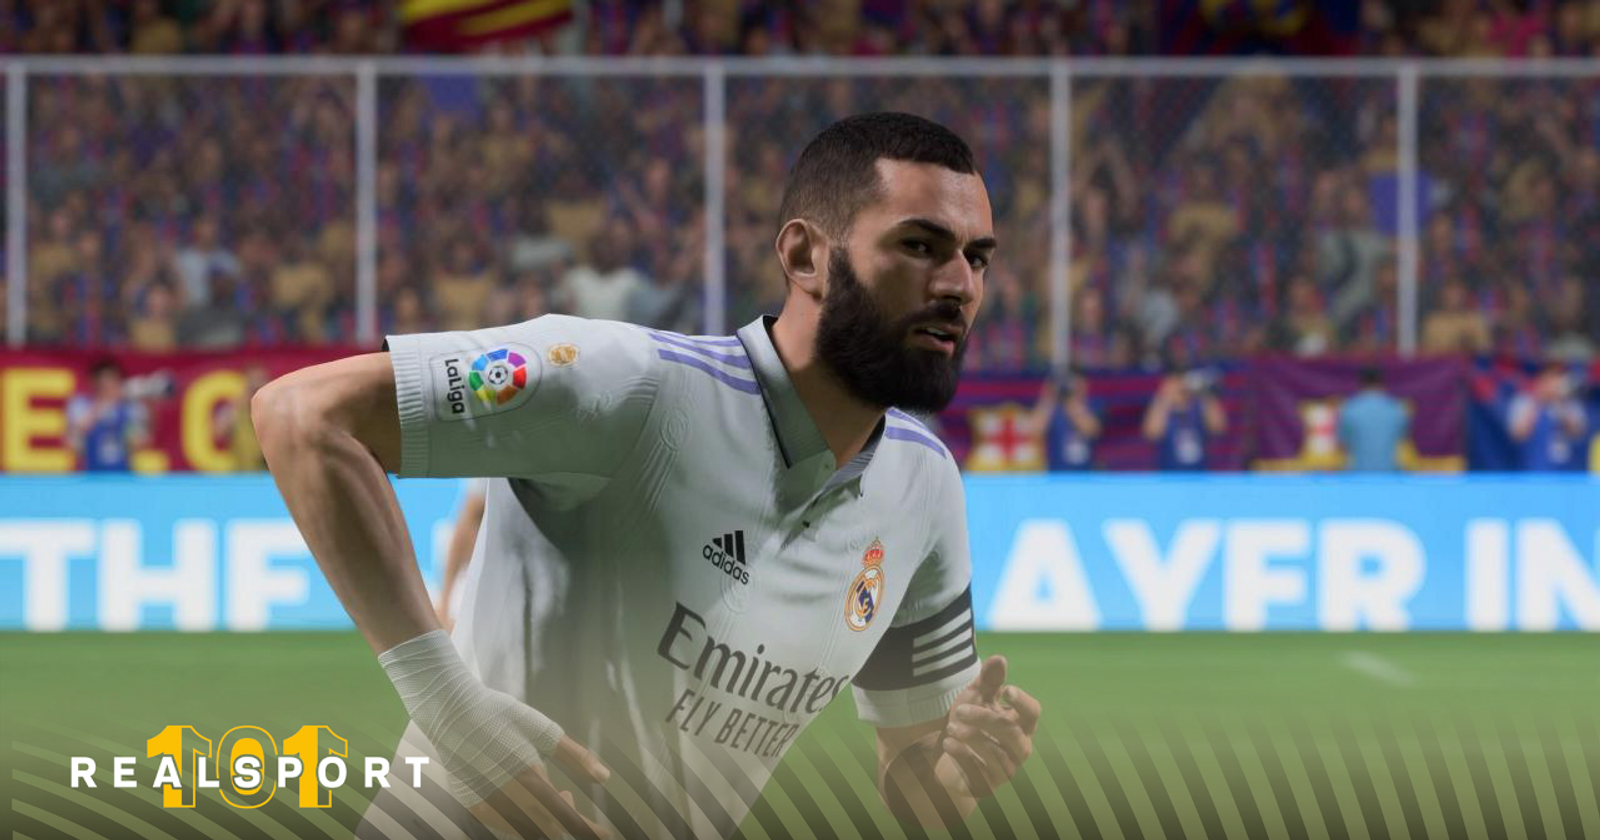 Thiago Almada featured in EA Sports FIFA 23 Team of the Season